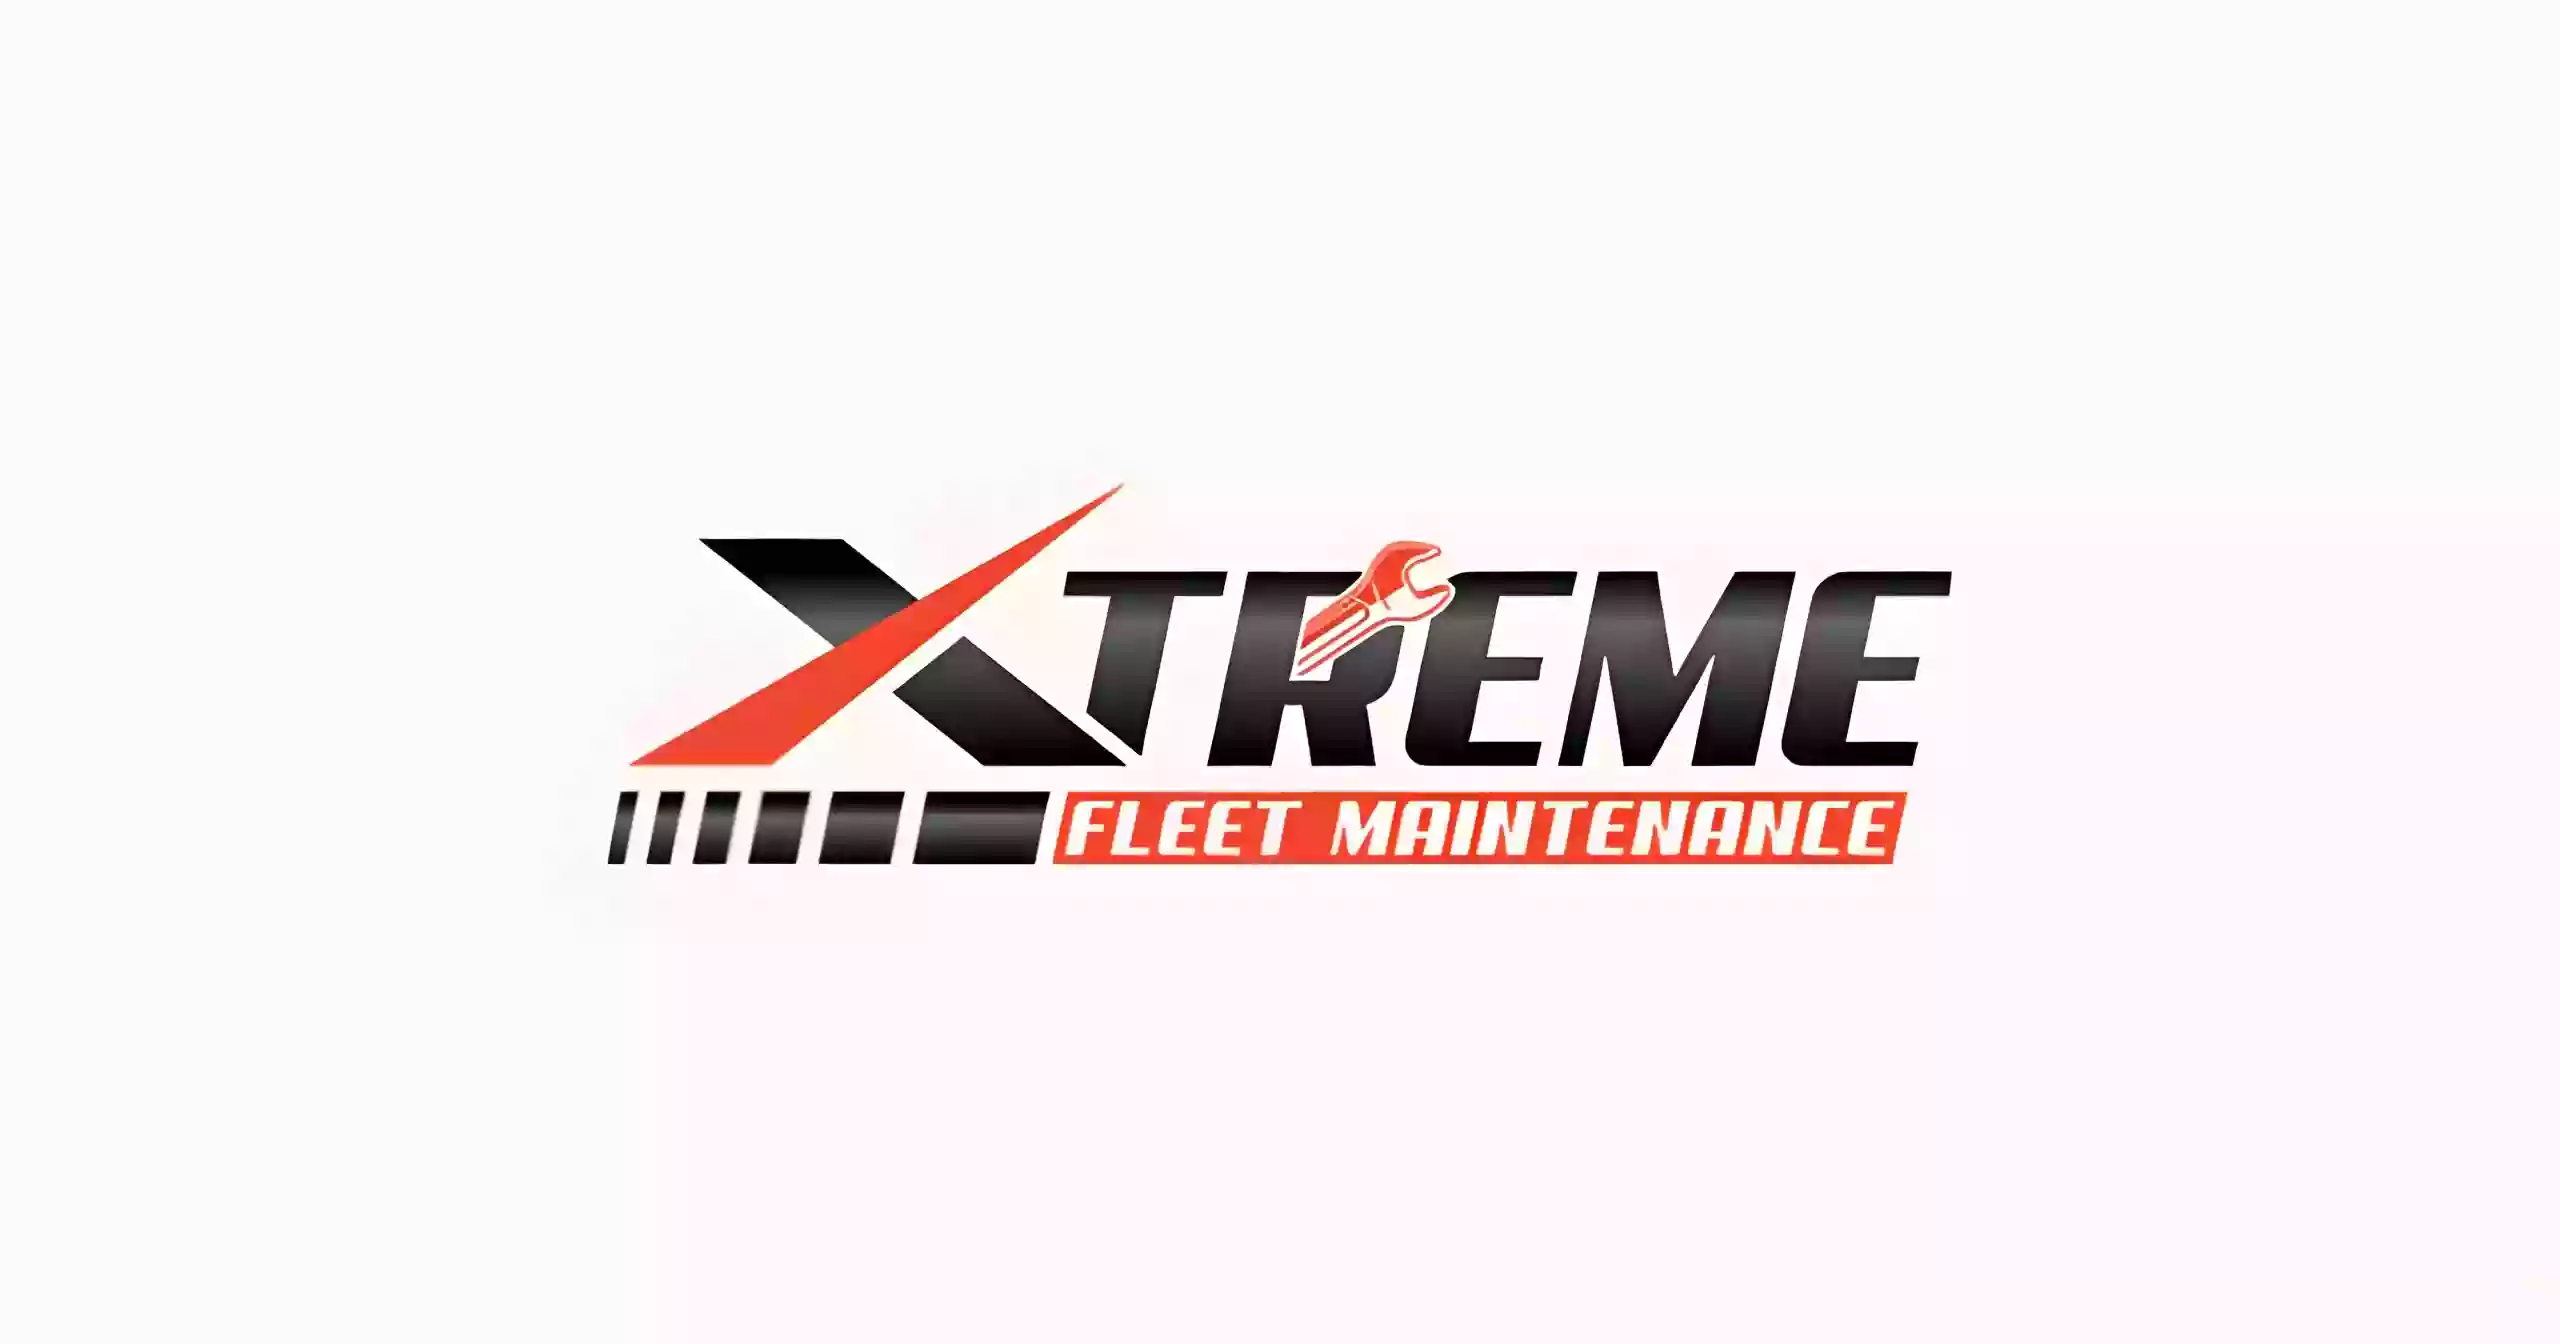 Xtreme Fleet Maintenance - Diesel Engine & forklift service